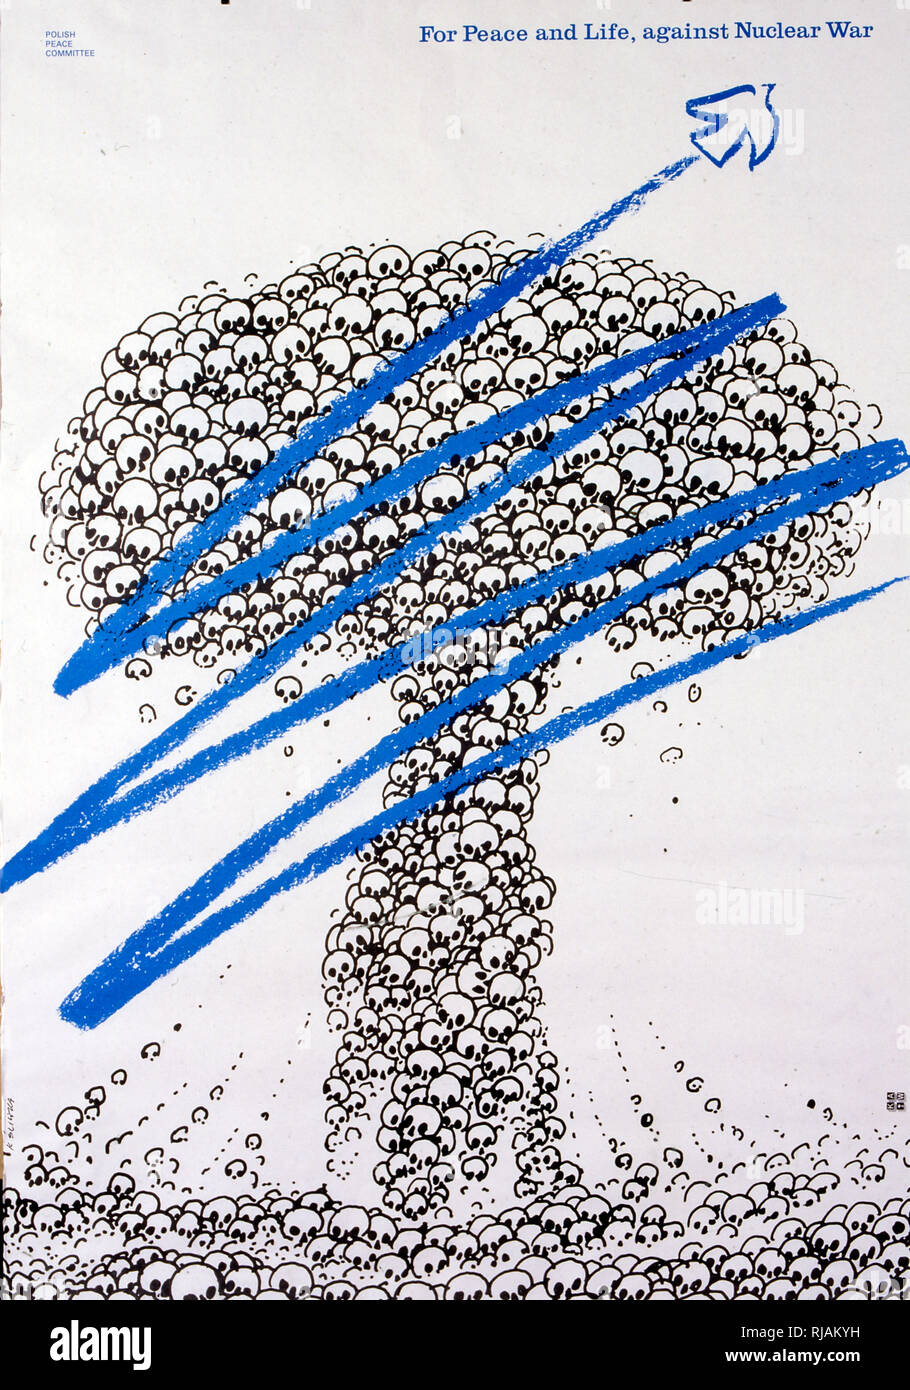 Pour la paix et de la vie contre la guerre nucléaire' 1983, l'anti-guerre nucléaire, une affiche publiée par le comité de la paix polonaise Banque D'Images